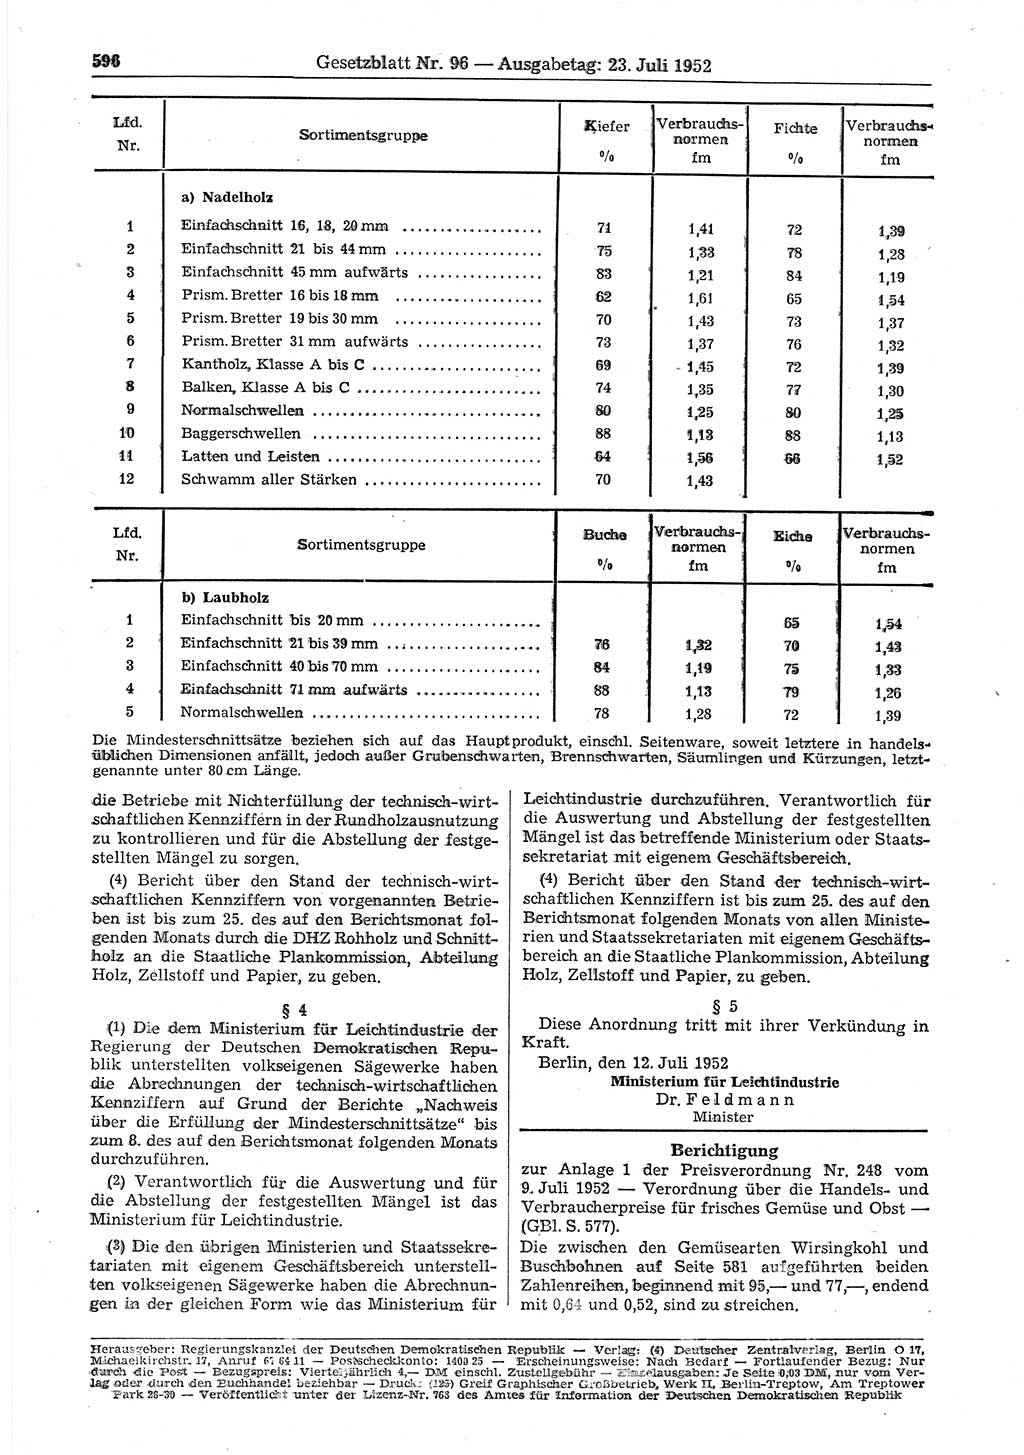 Gesetzblatt (GBl.) der Deutschen Demokratischen Republik (DDR) 1952, Seite 596 (GBl. DDR 1952, S. 596)